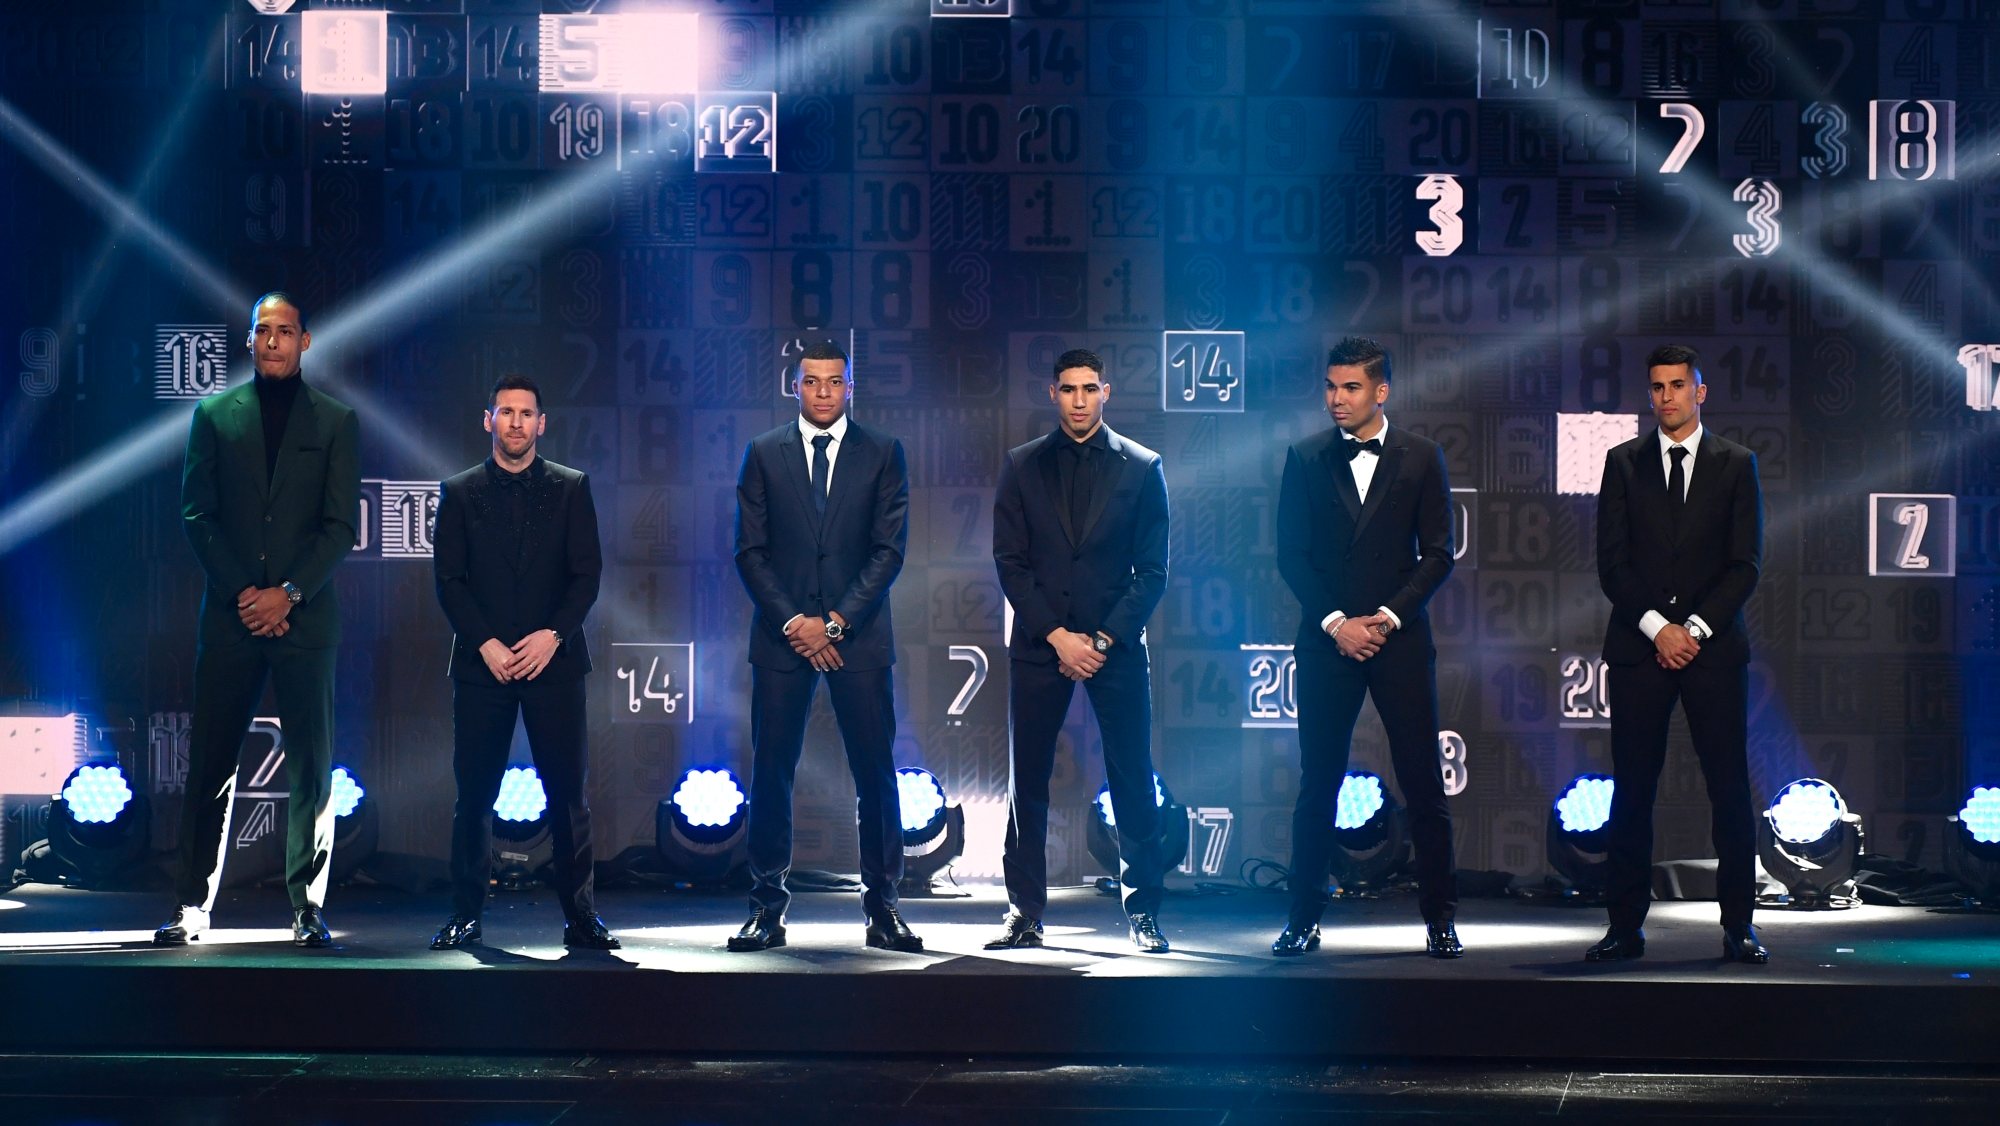 João Cancelo foi eleito para o Melhor Onze de 2022, tendo recebido o prémio ao lado de jogadores como Van Dijk, Messi, Mbappé, Hakimi ou Casemiro